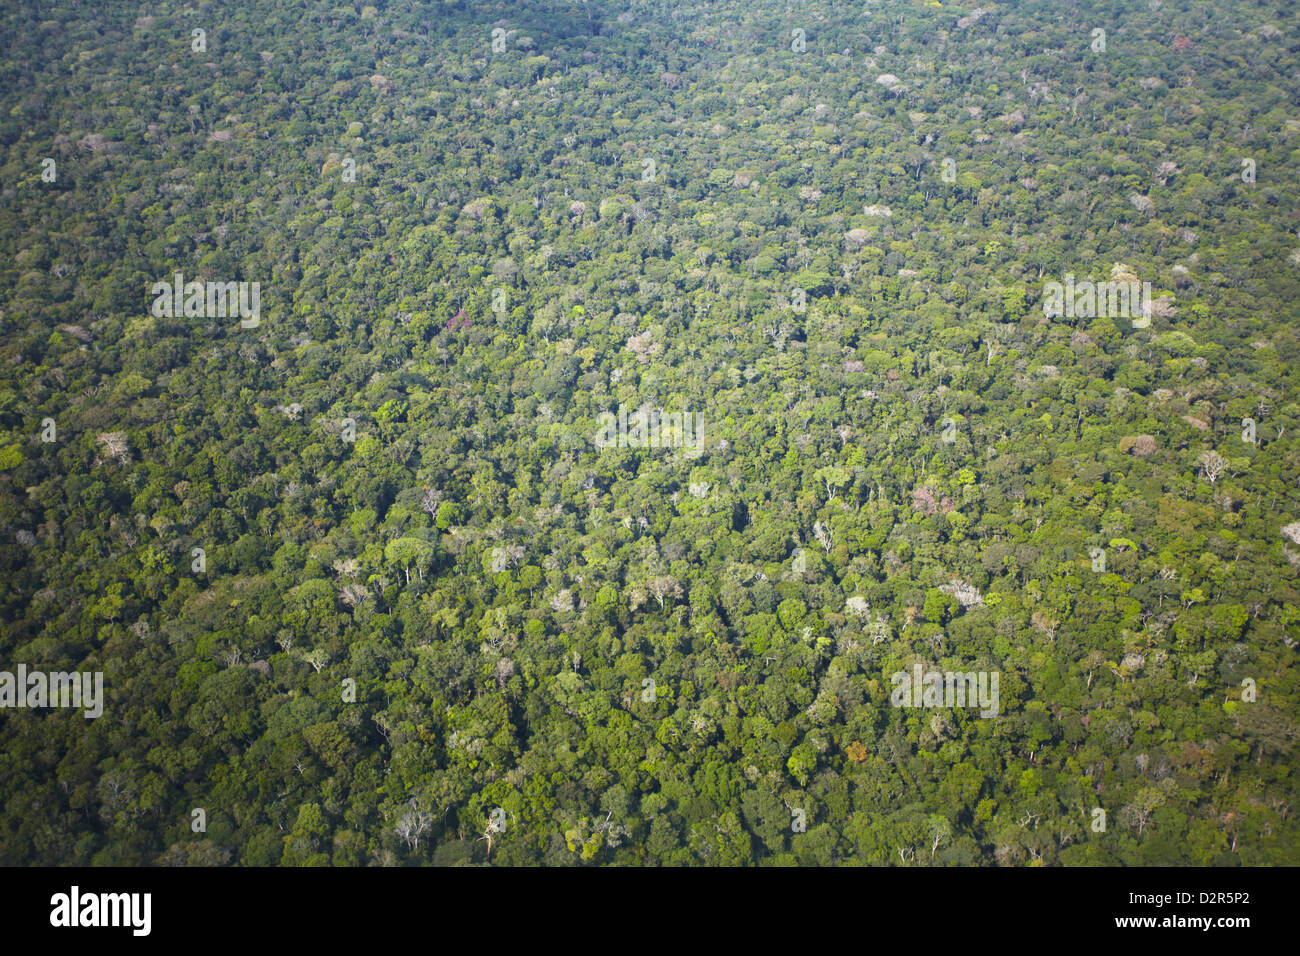 Vue aérienne de la forêt amazonienne, Manaus, Amazonas, Brésil, Amérique du Sud Banque D'Images